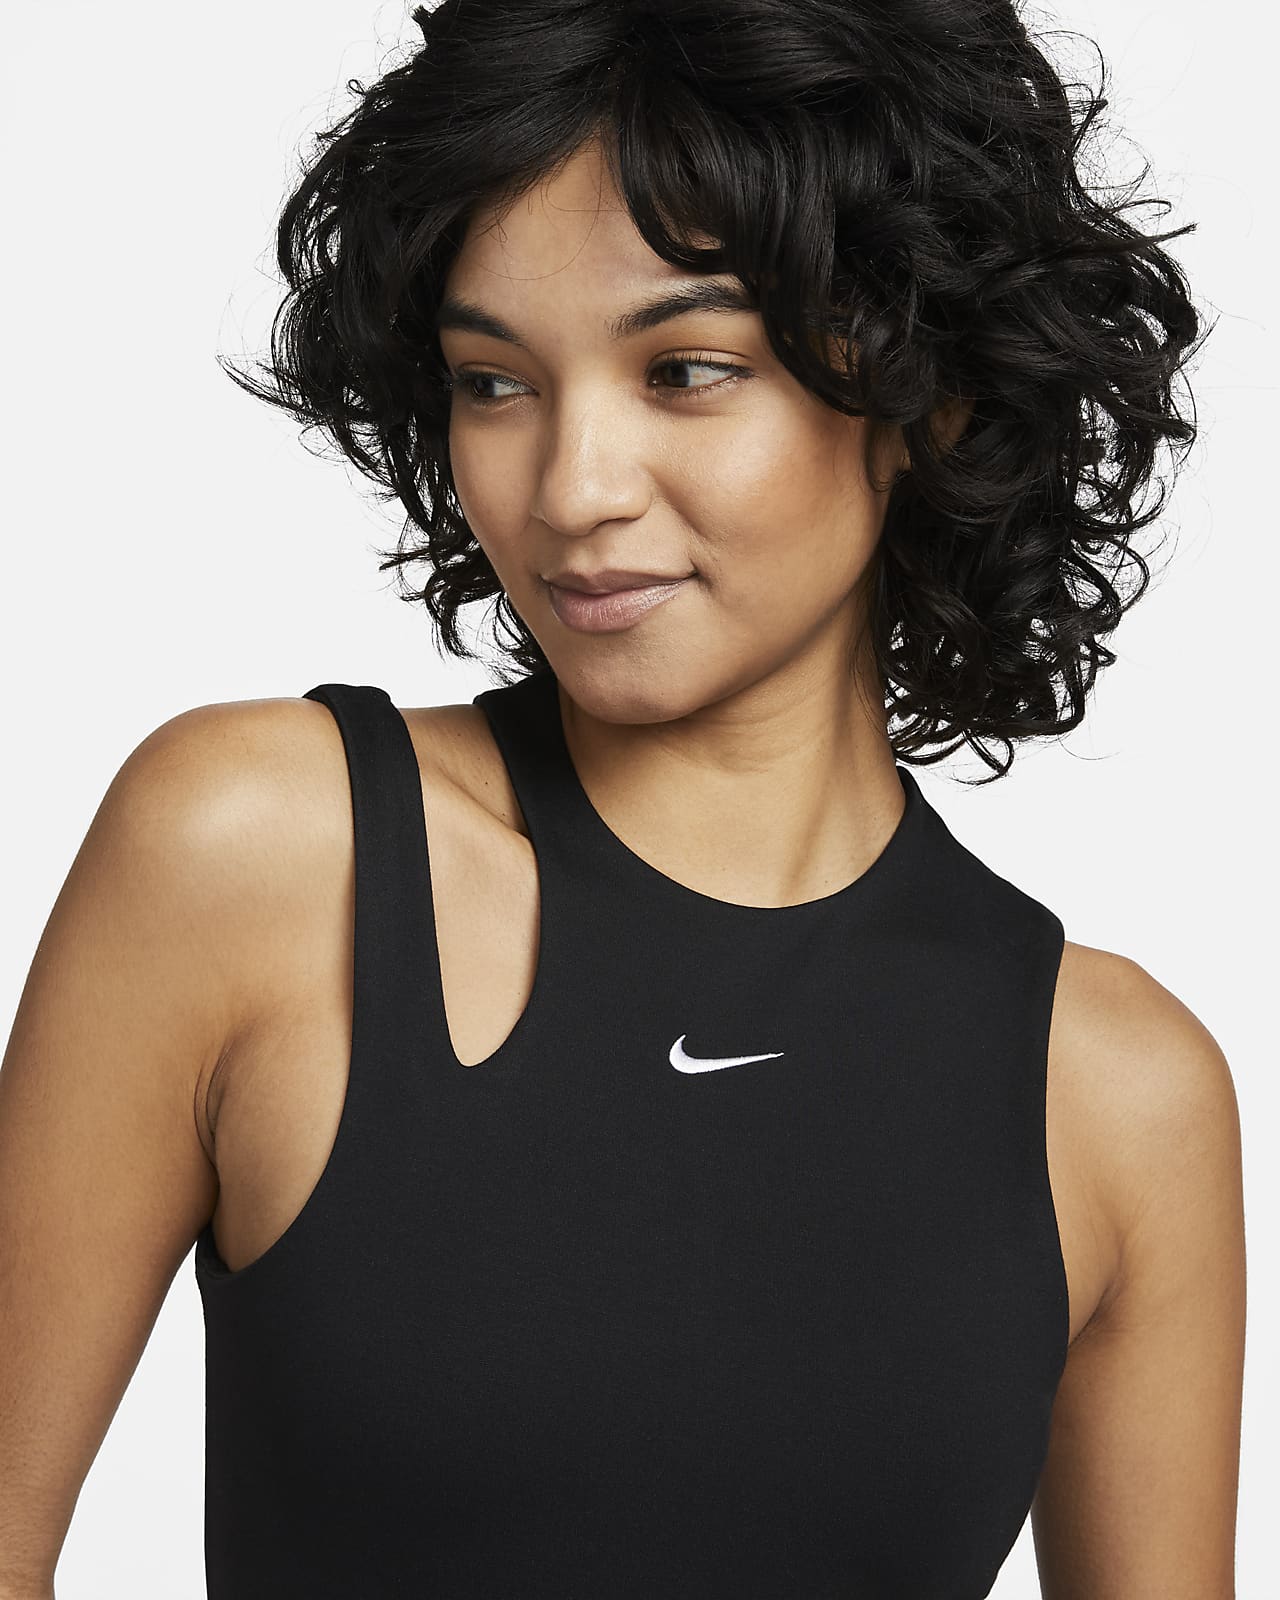 overal Klusjesman Formuleren Nike Sportswear Essential Women's Bodysuit Tank. Nike.com